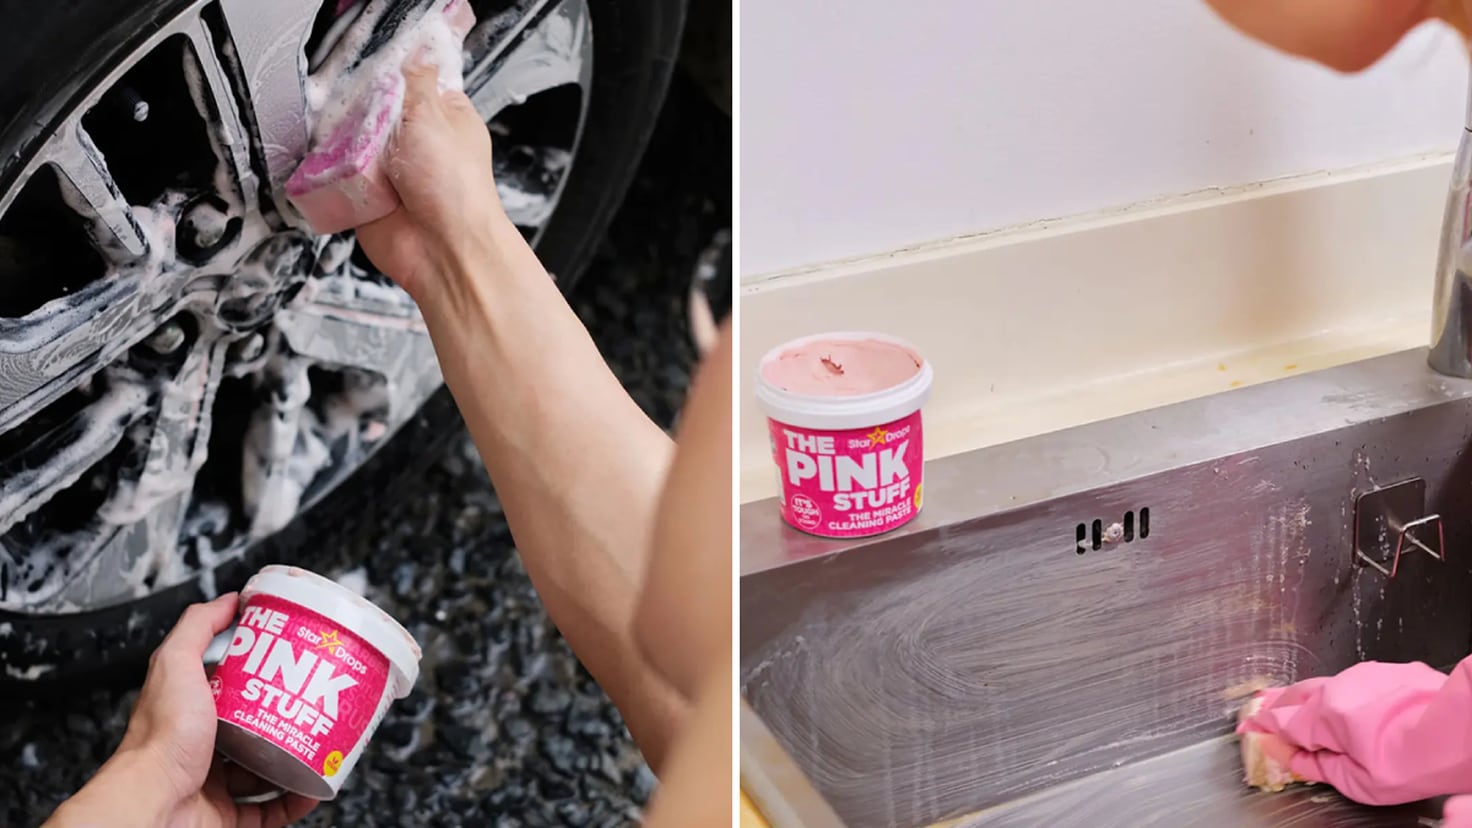 The Pink Stuff: ¿para qué sirve el 'kit' de limpieza “milagroso”? - Showroom